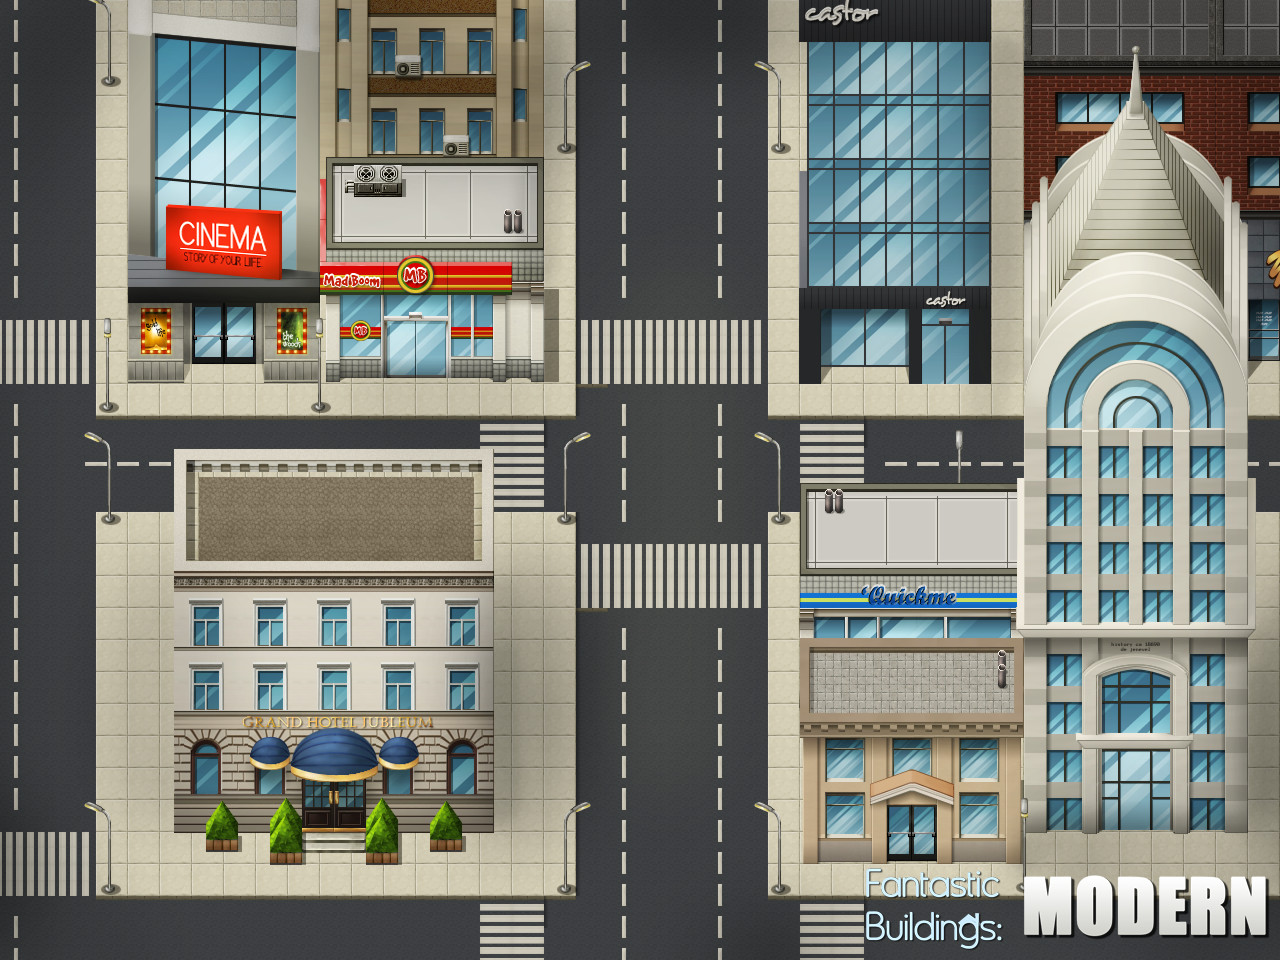 RPG Maker VX Ace - Fantastic Buildings: Modern Featured Screenshot #1